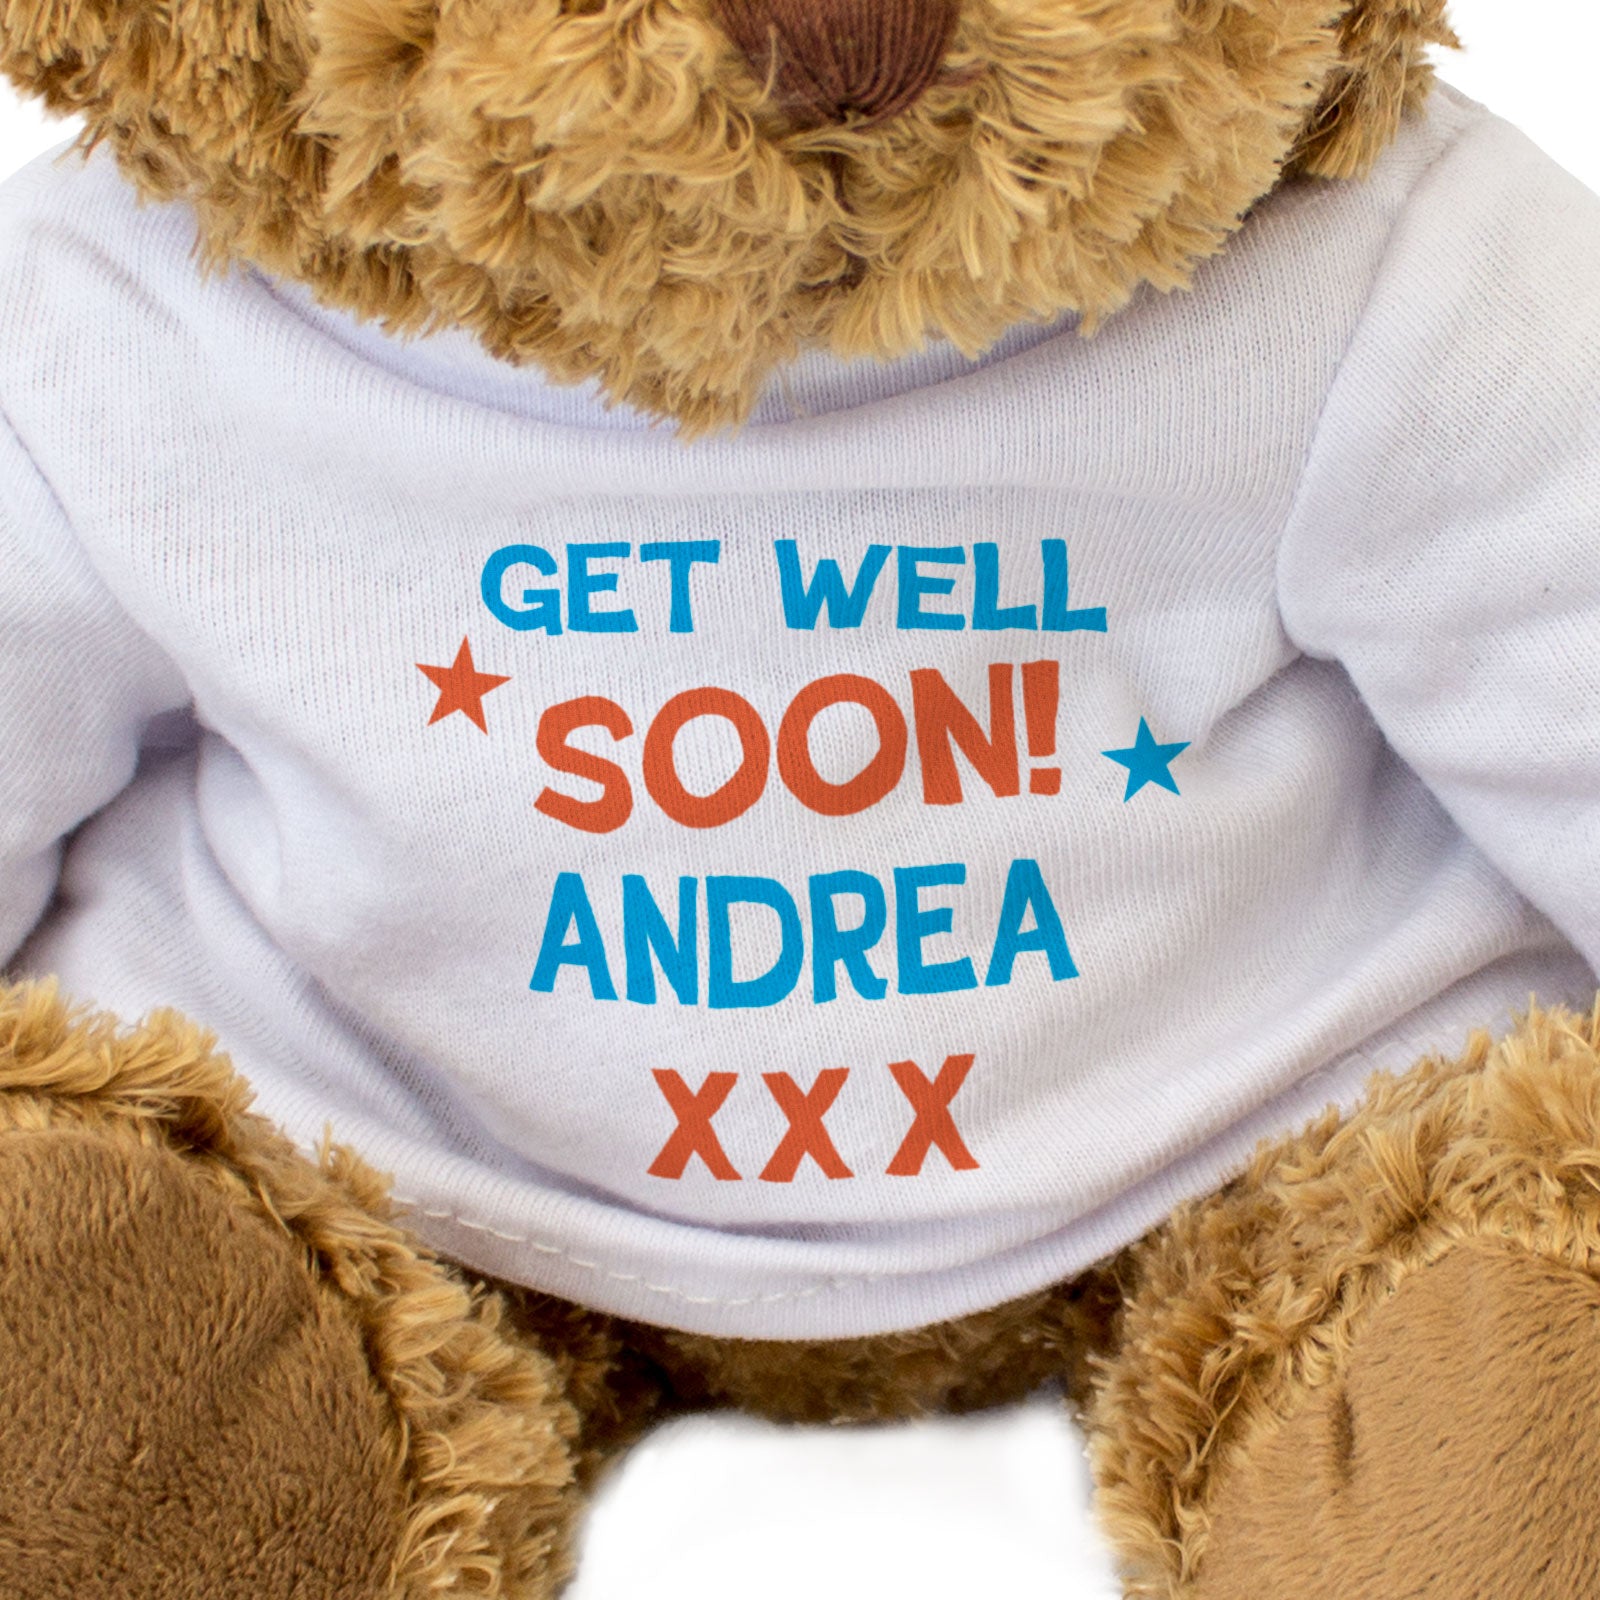 Get Well Soon Andrea - Teddy Bear